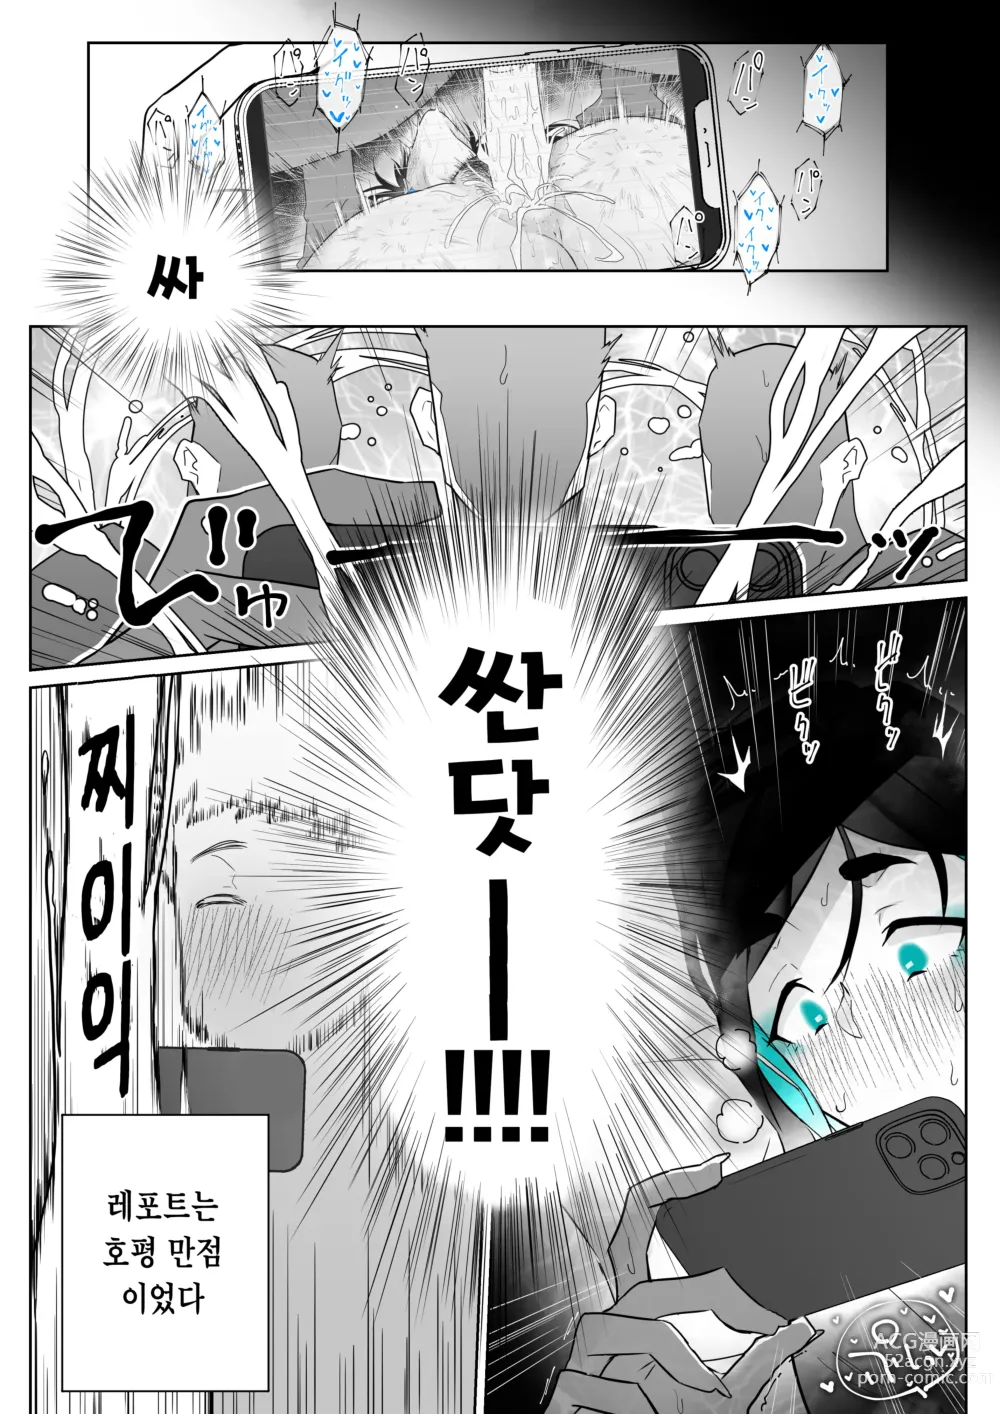 Page 86 of doujinshi Machida-chan 1-17